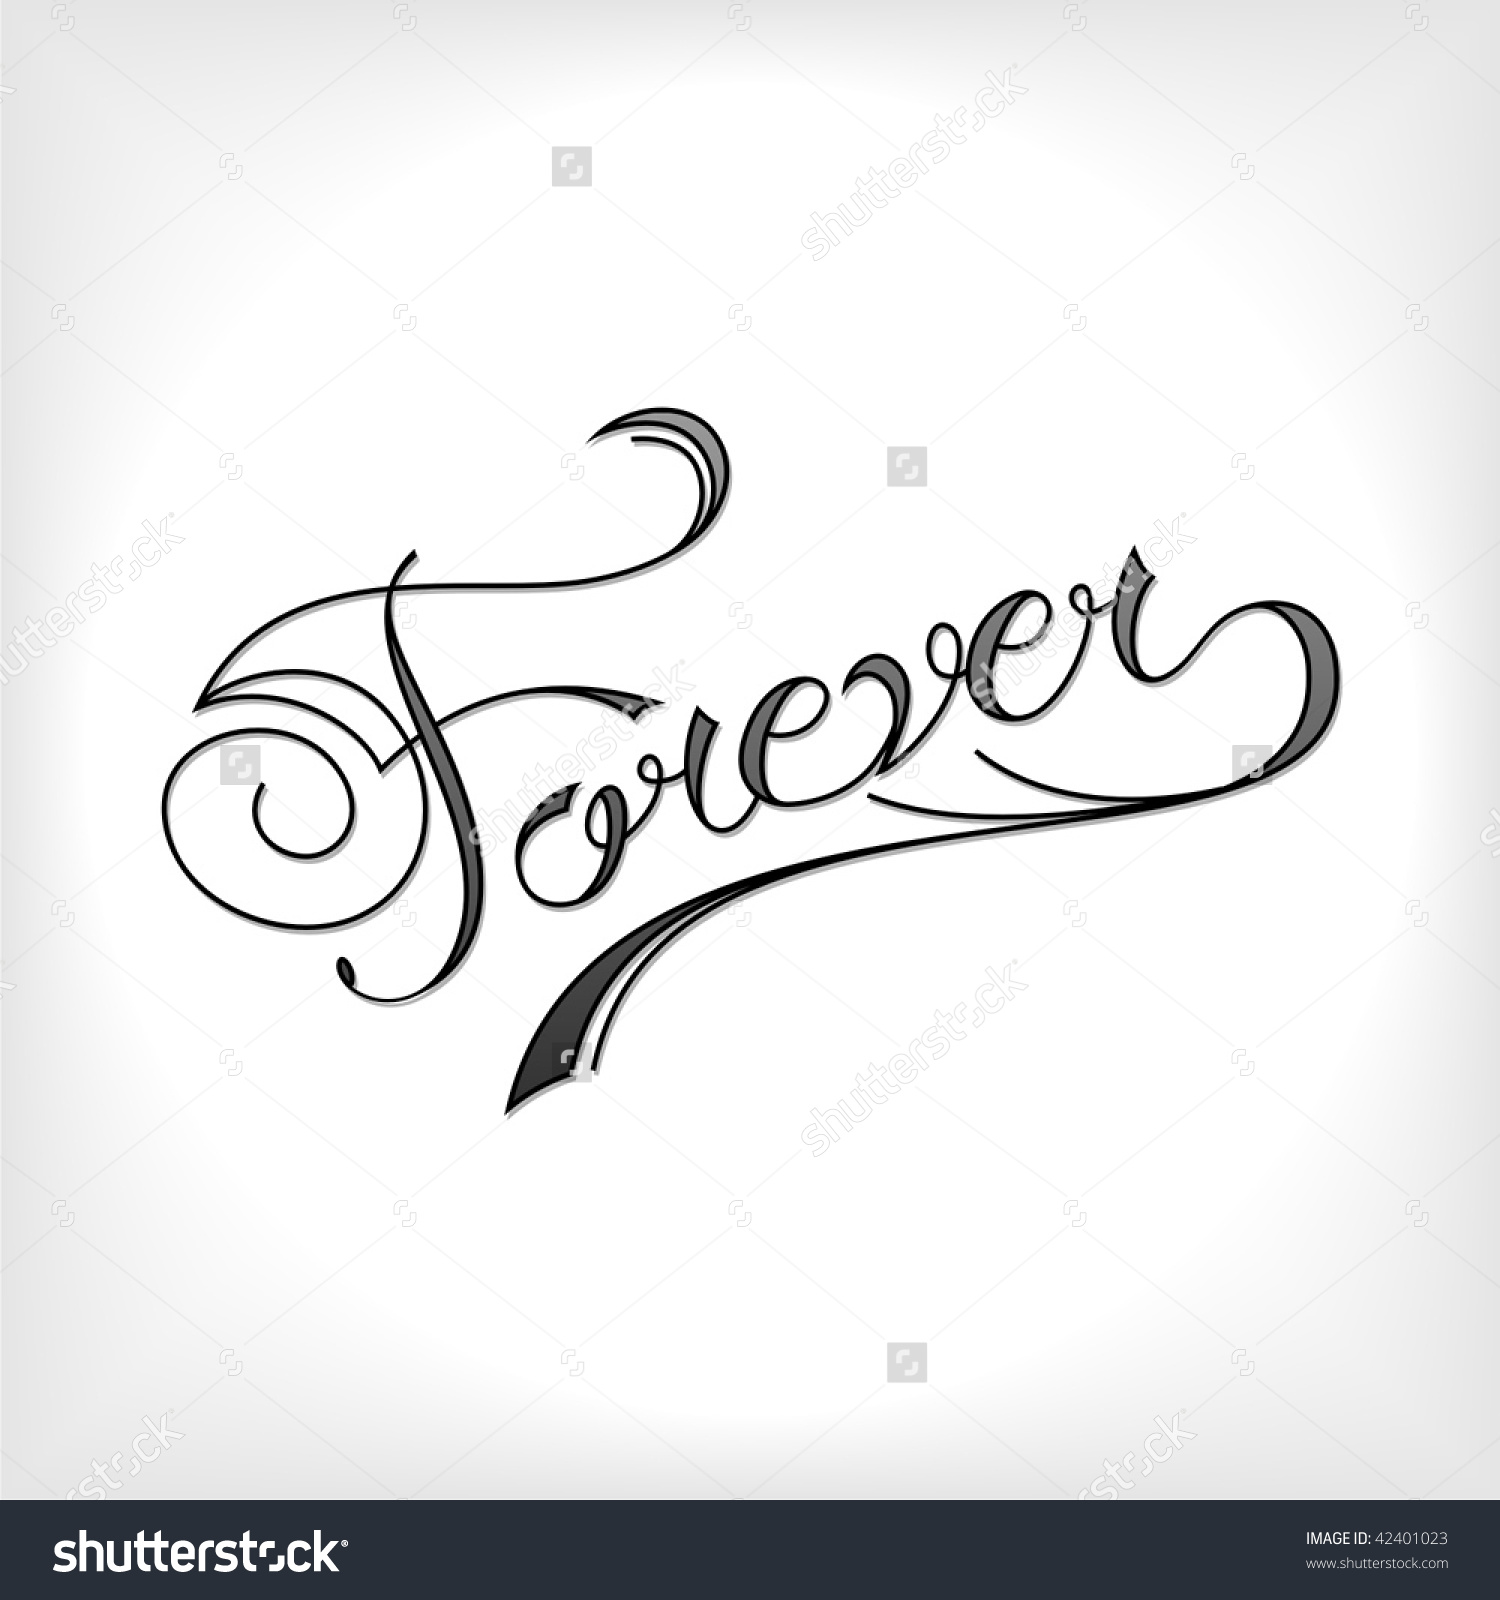 Forever #3